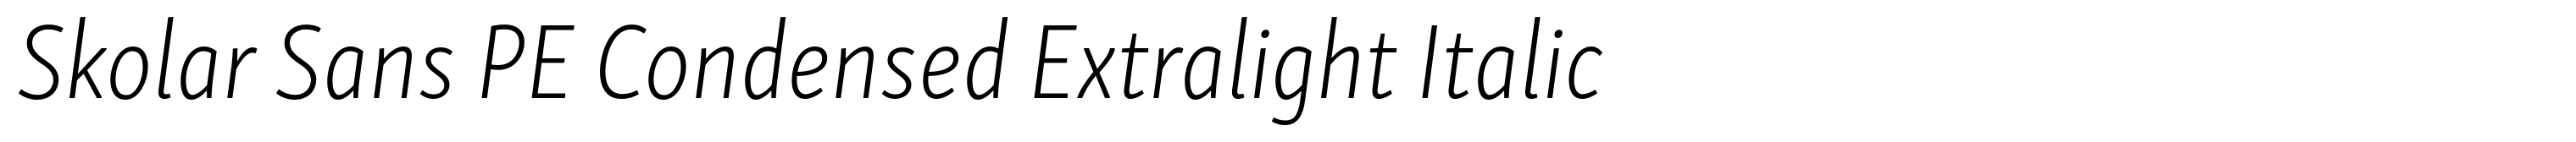 Skolar Sans PE Condensed Extralight Italic